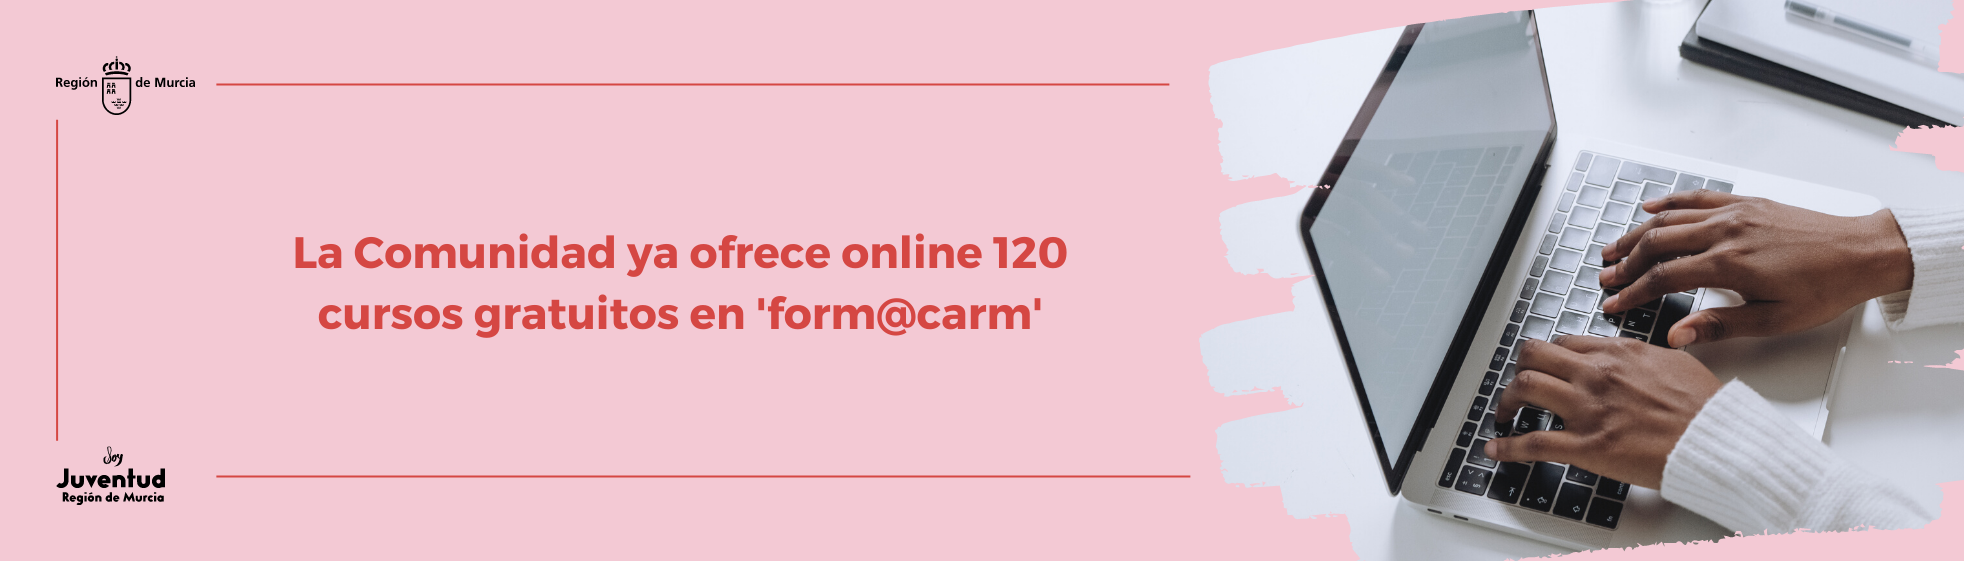 La Comunidad ya ofrece online 120 cursos gratuitos en 'form@carm'